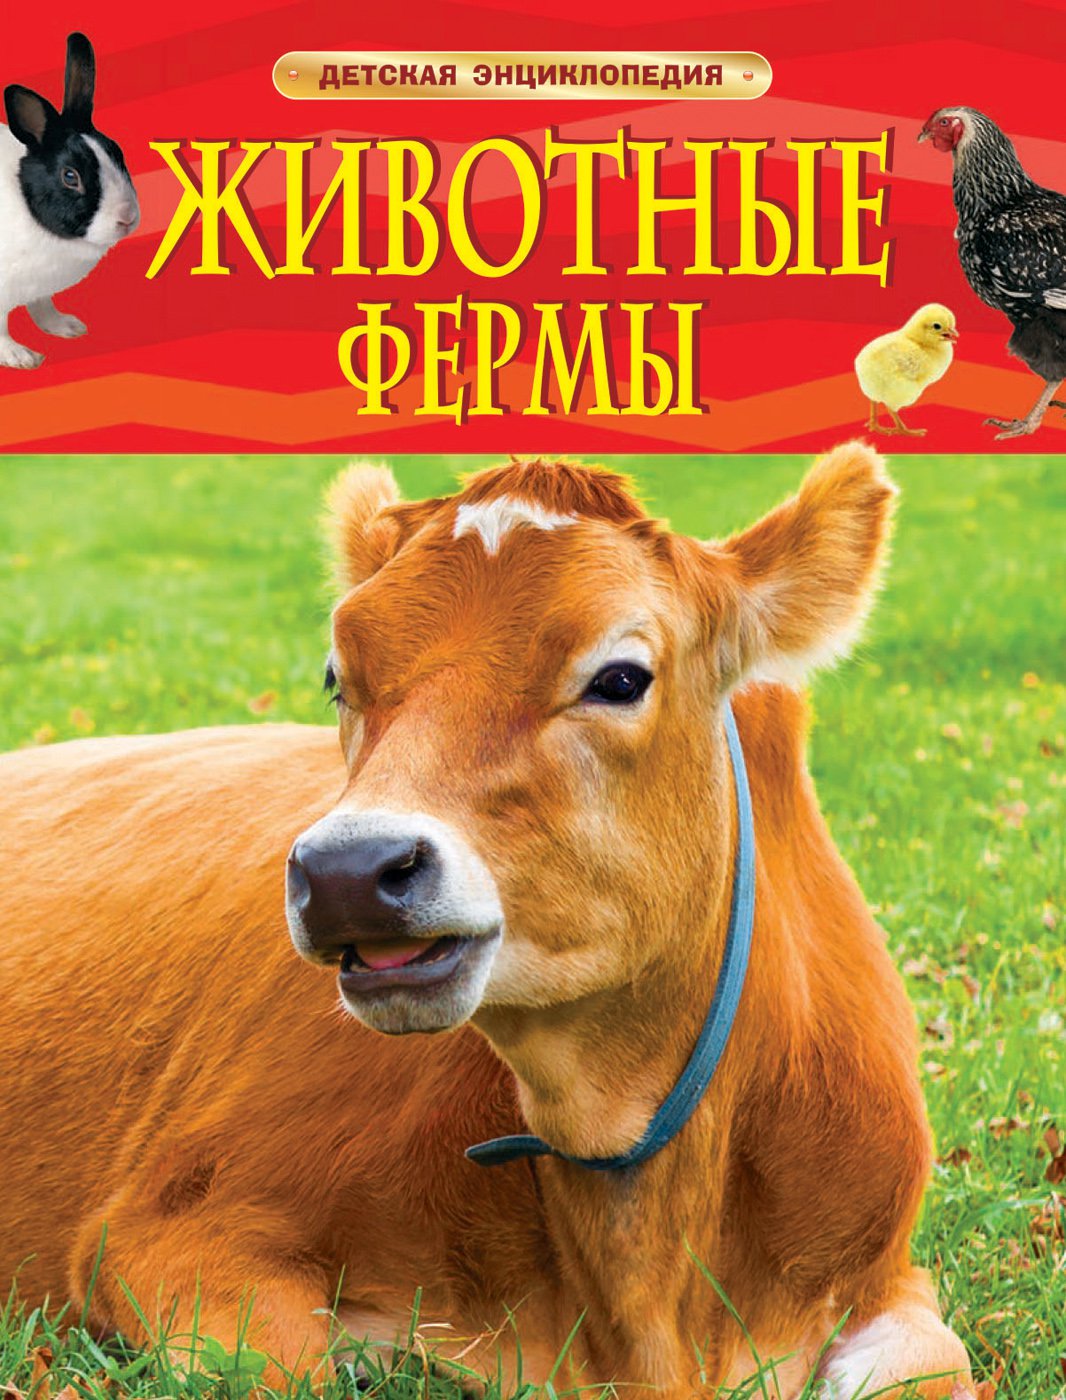 ДетскаяЭнциклопедия Животные фермы, (Росмэн/Росмэн-Пресс, 2020), 7Бц, c.48